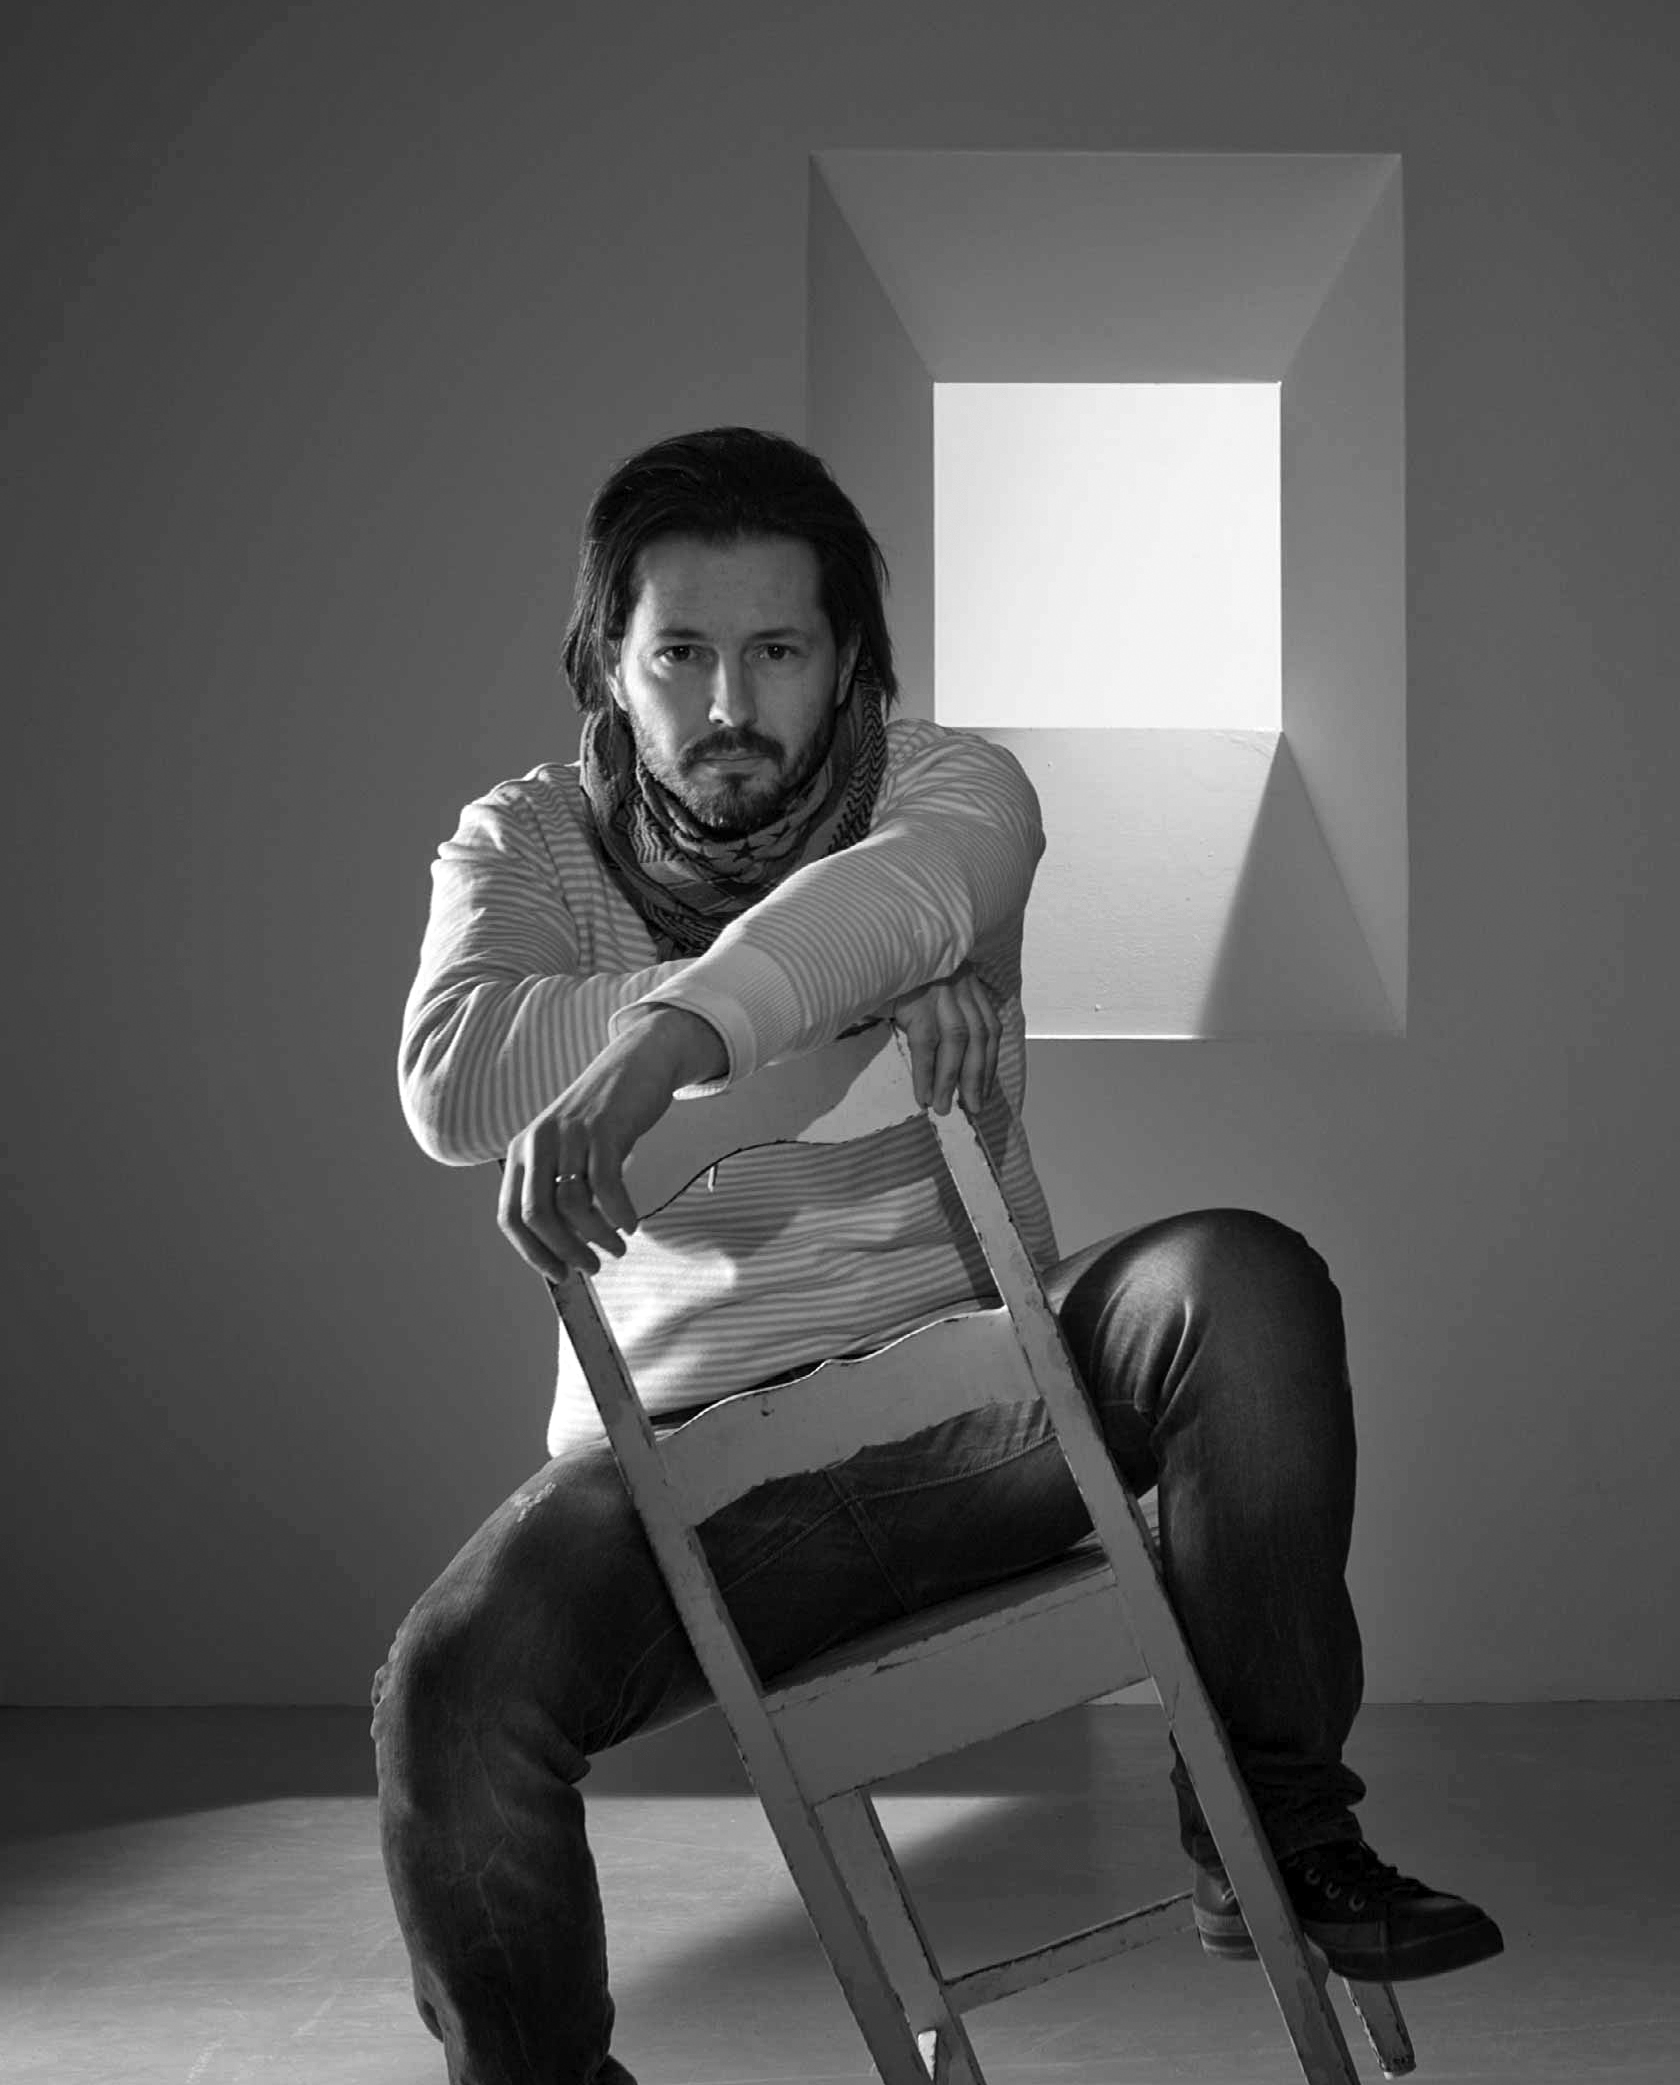 Salone del Mobile 2016 Milano: intervista a Matteo Ugolini, art director di Karman